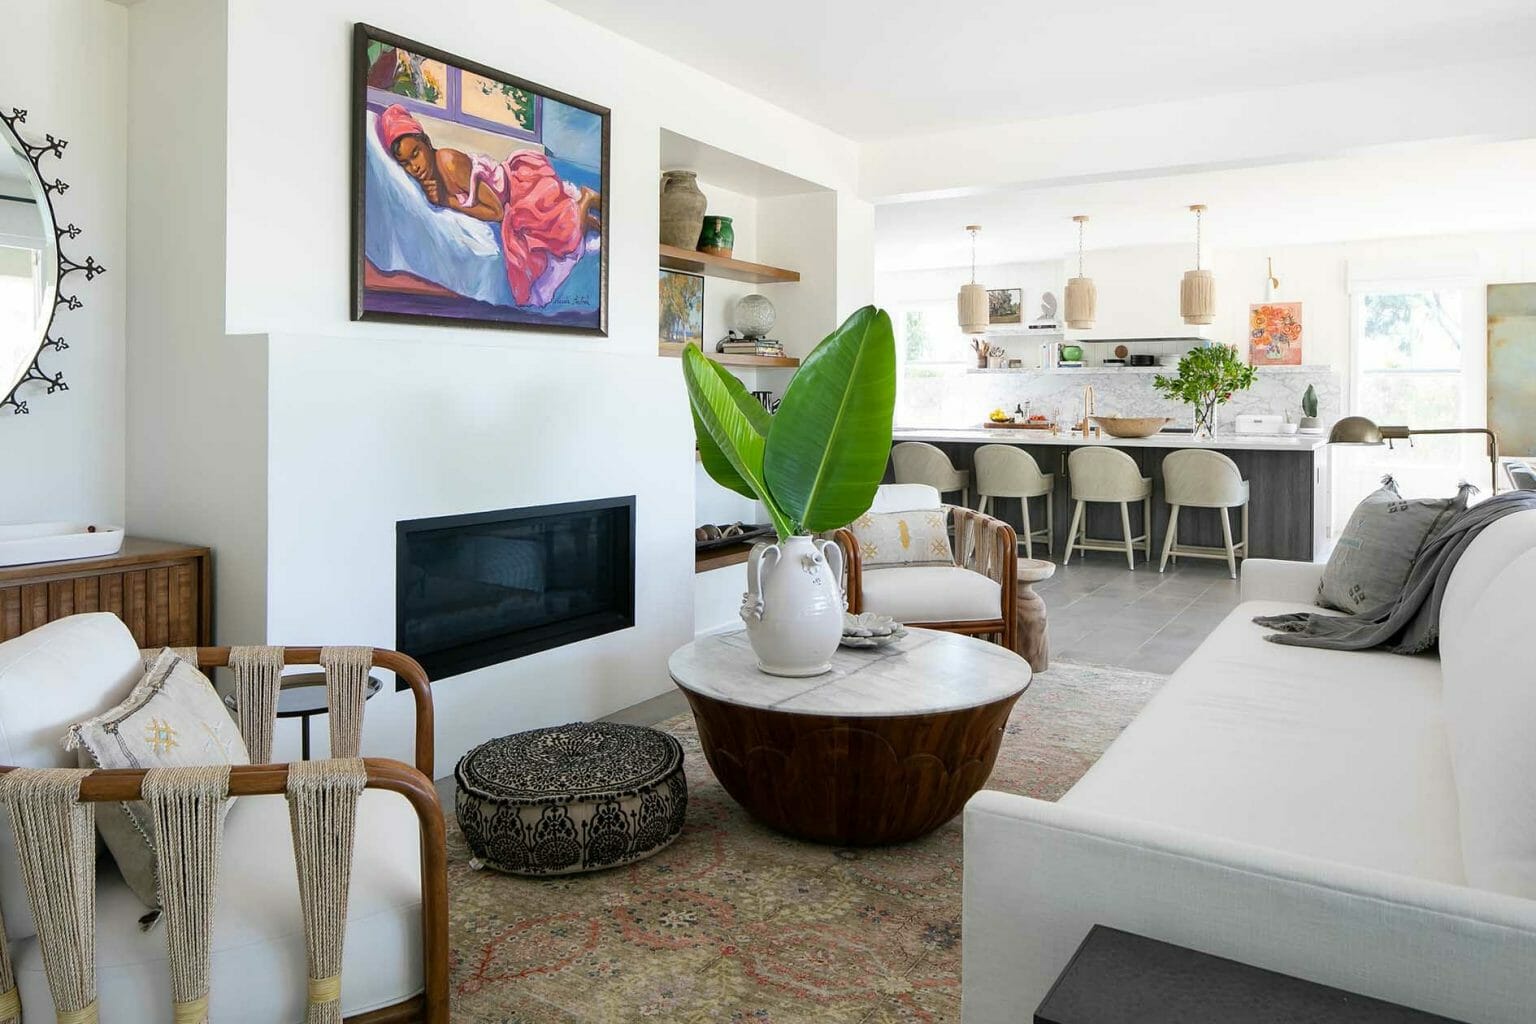 San Diego Interior Decorators Modern Living Room By Trady Lynn 1536x1024 